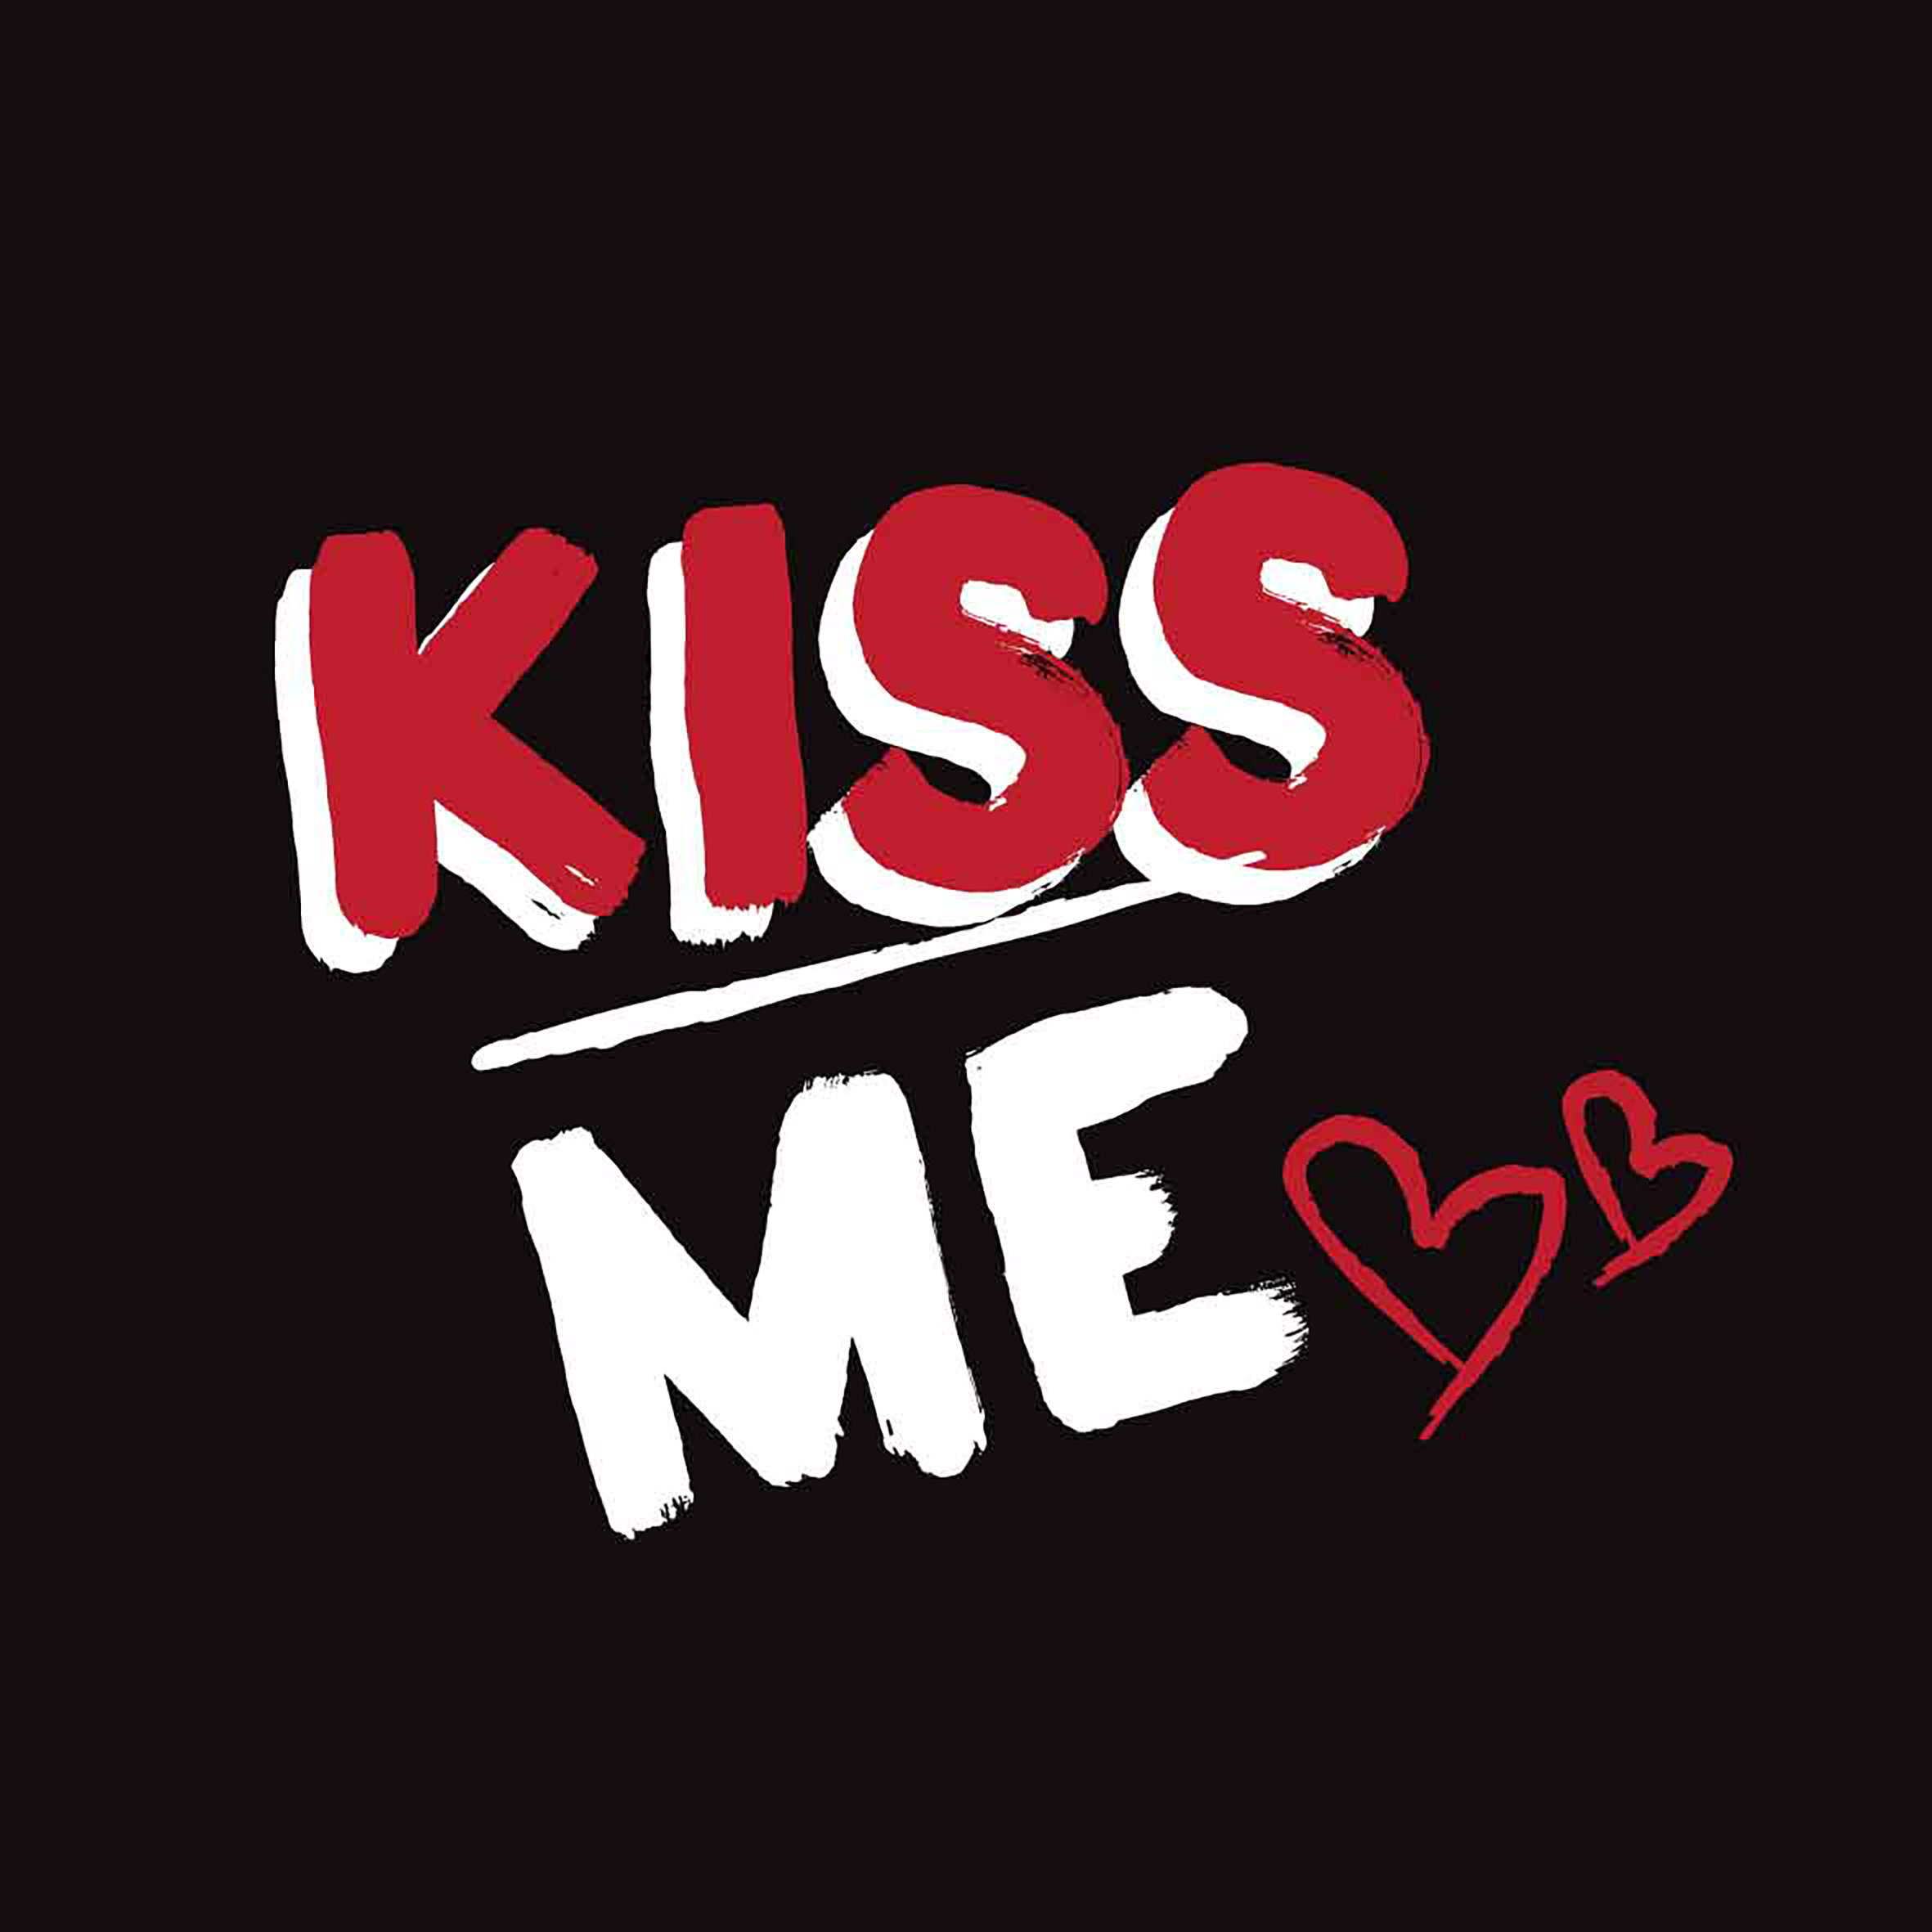 Кис ми текст. Kiss надпись. Надпись Кисс ми. Кисс надпись красивая. Kiss me песня.